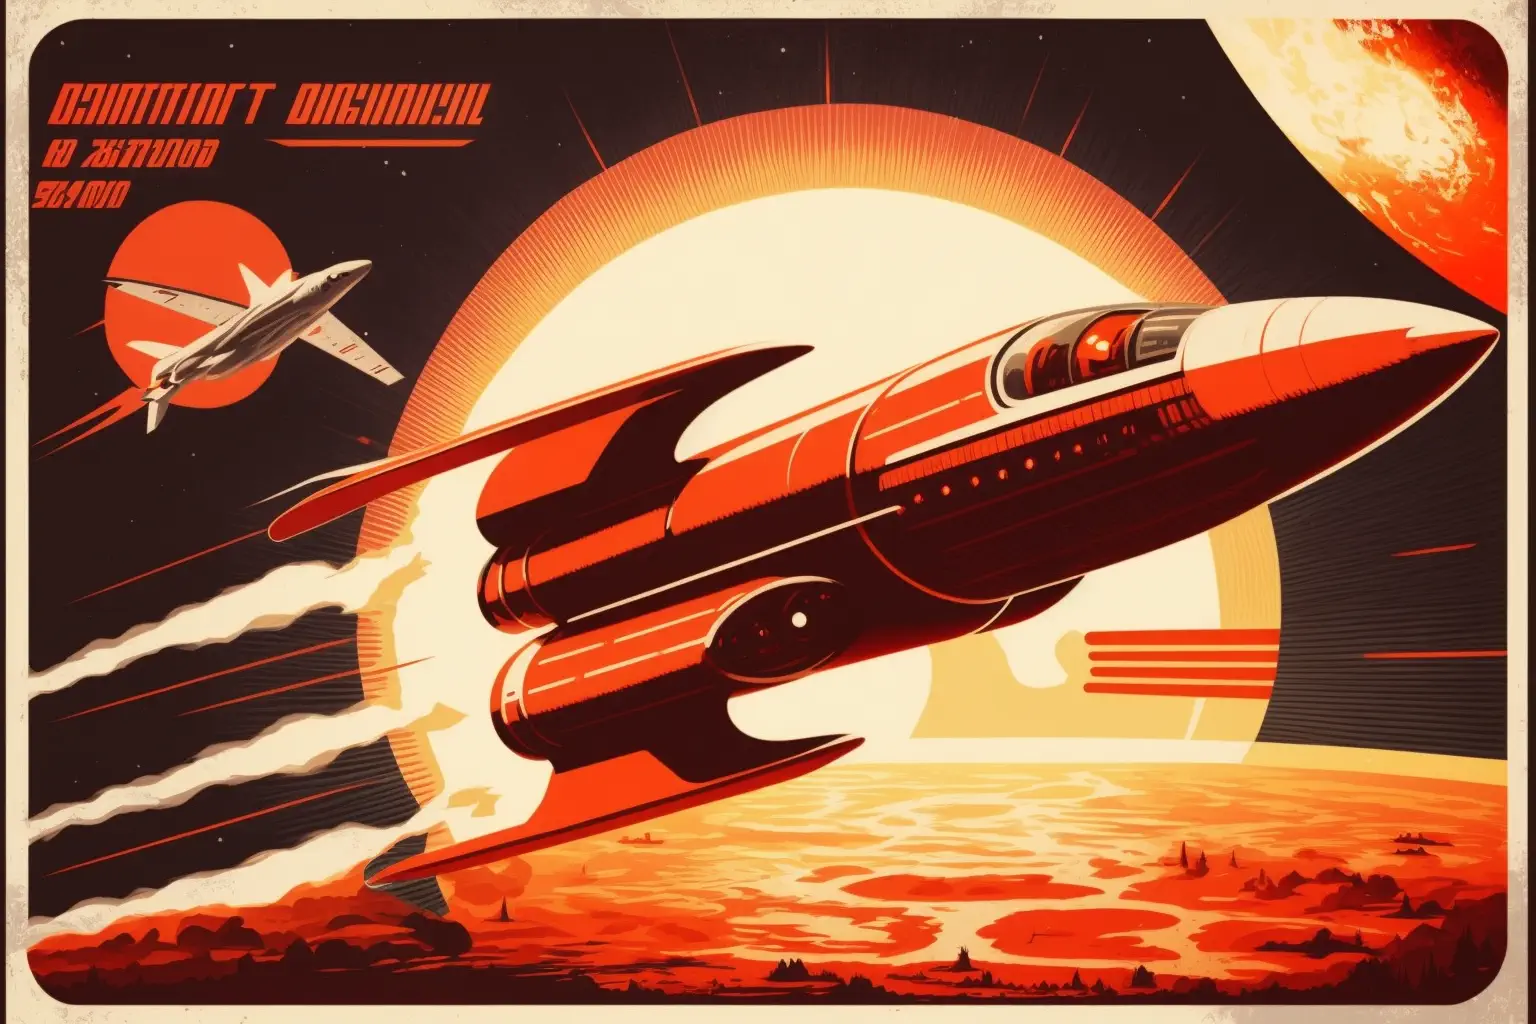 Drakonchik17_soviet_space_program_retrofuturistic_poster_1960_s_f9dbf326-91cc-4e67-a56e-a676e6ad505e